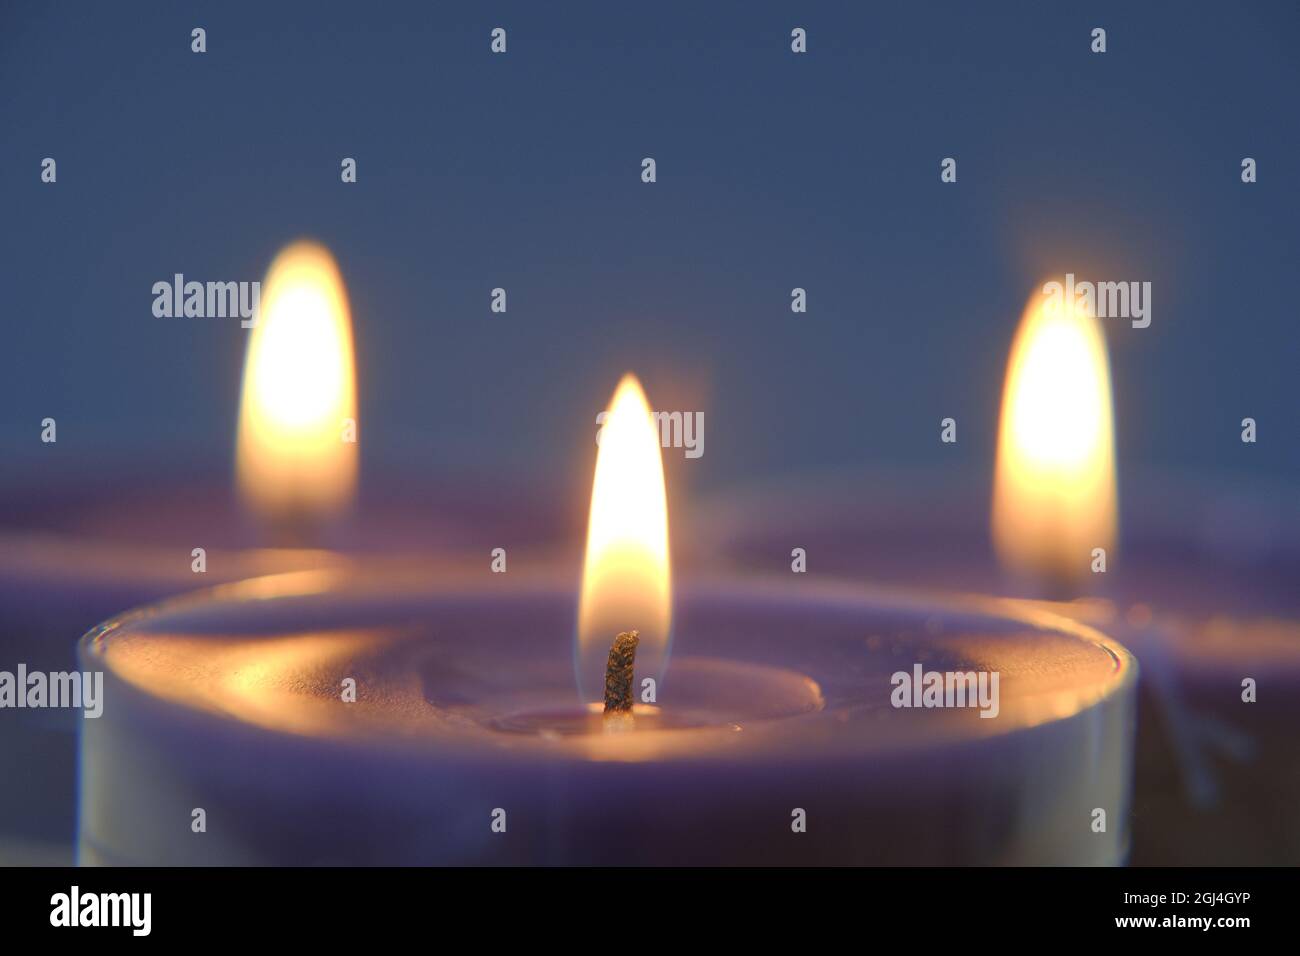 Brennende Kerzen.Kerzenflamme.Set von blauen und weißen Kerzen im Dunkeln.Religion Symbol. Kerzen Hintergrund.Blaue Kerzen auf blauem Hintergrund Stockfoto